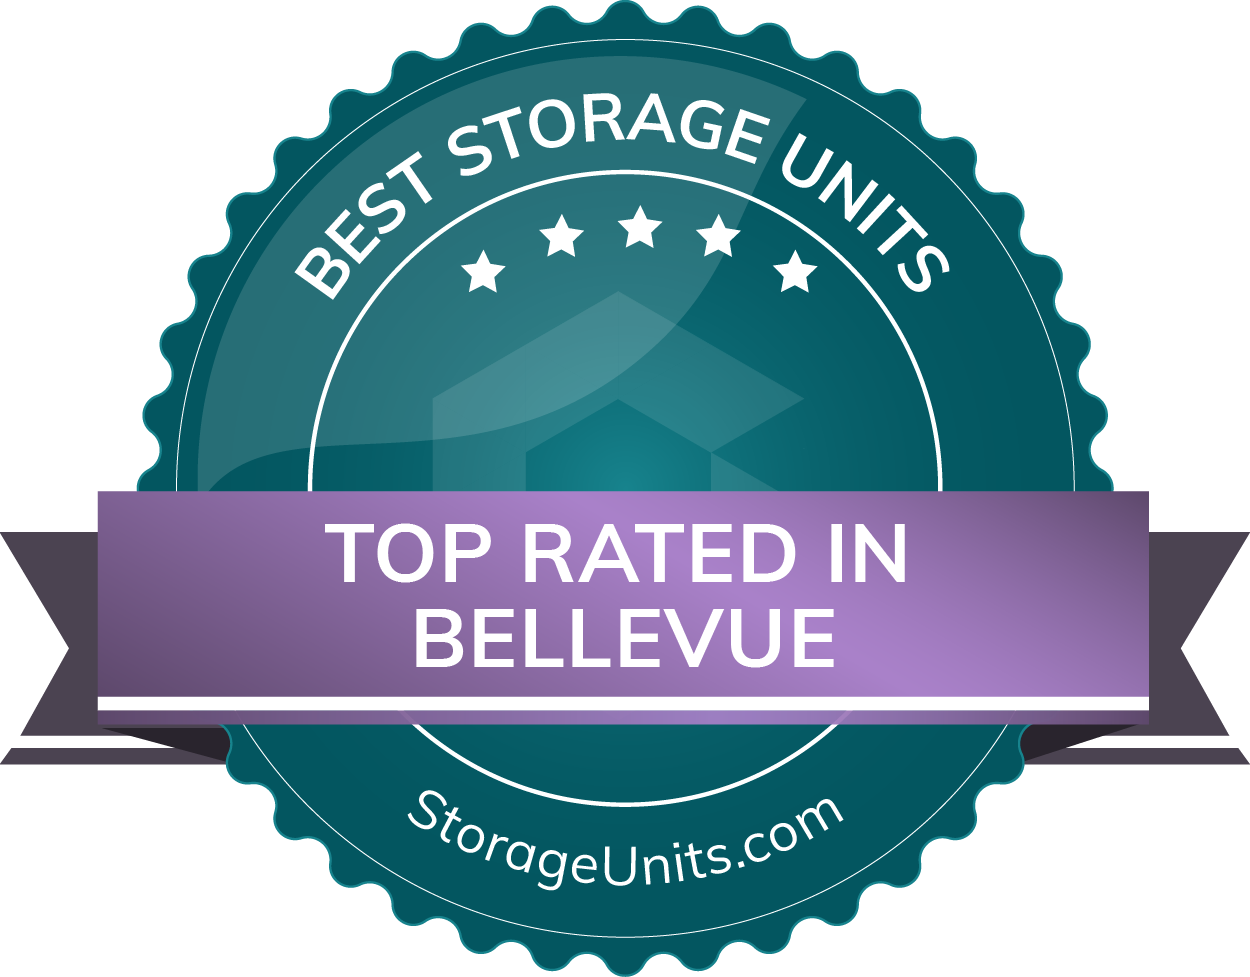 Best Self Storage Units in Bellevue, Washington of 2022